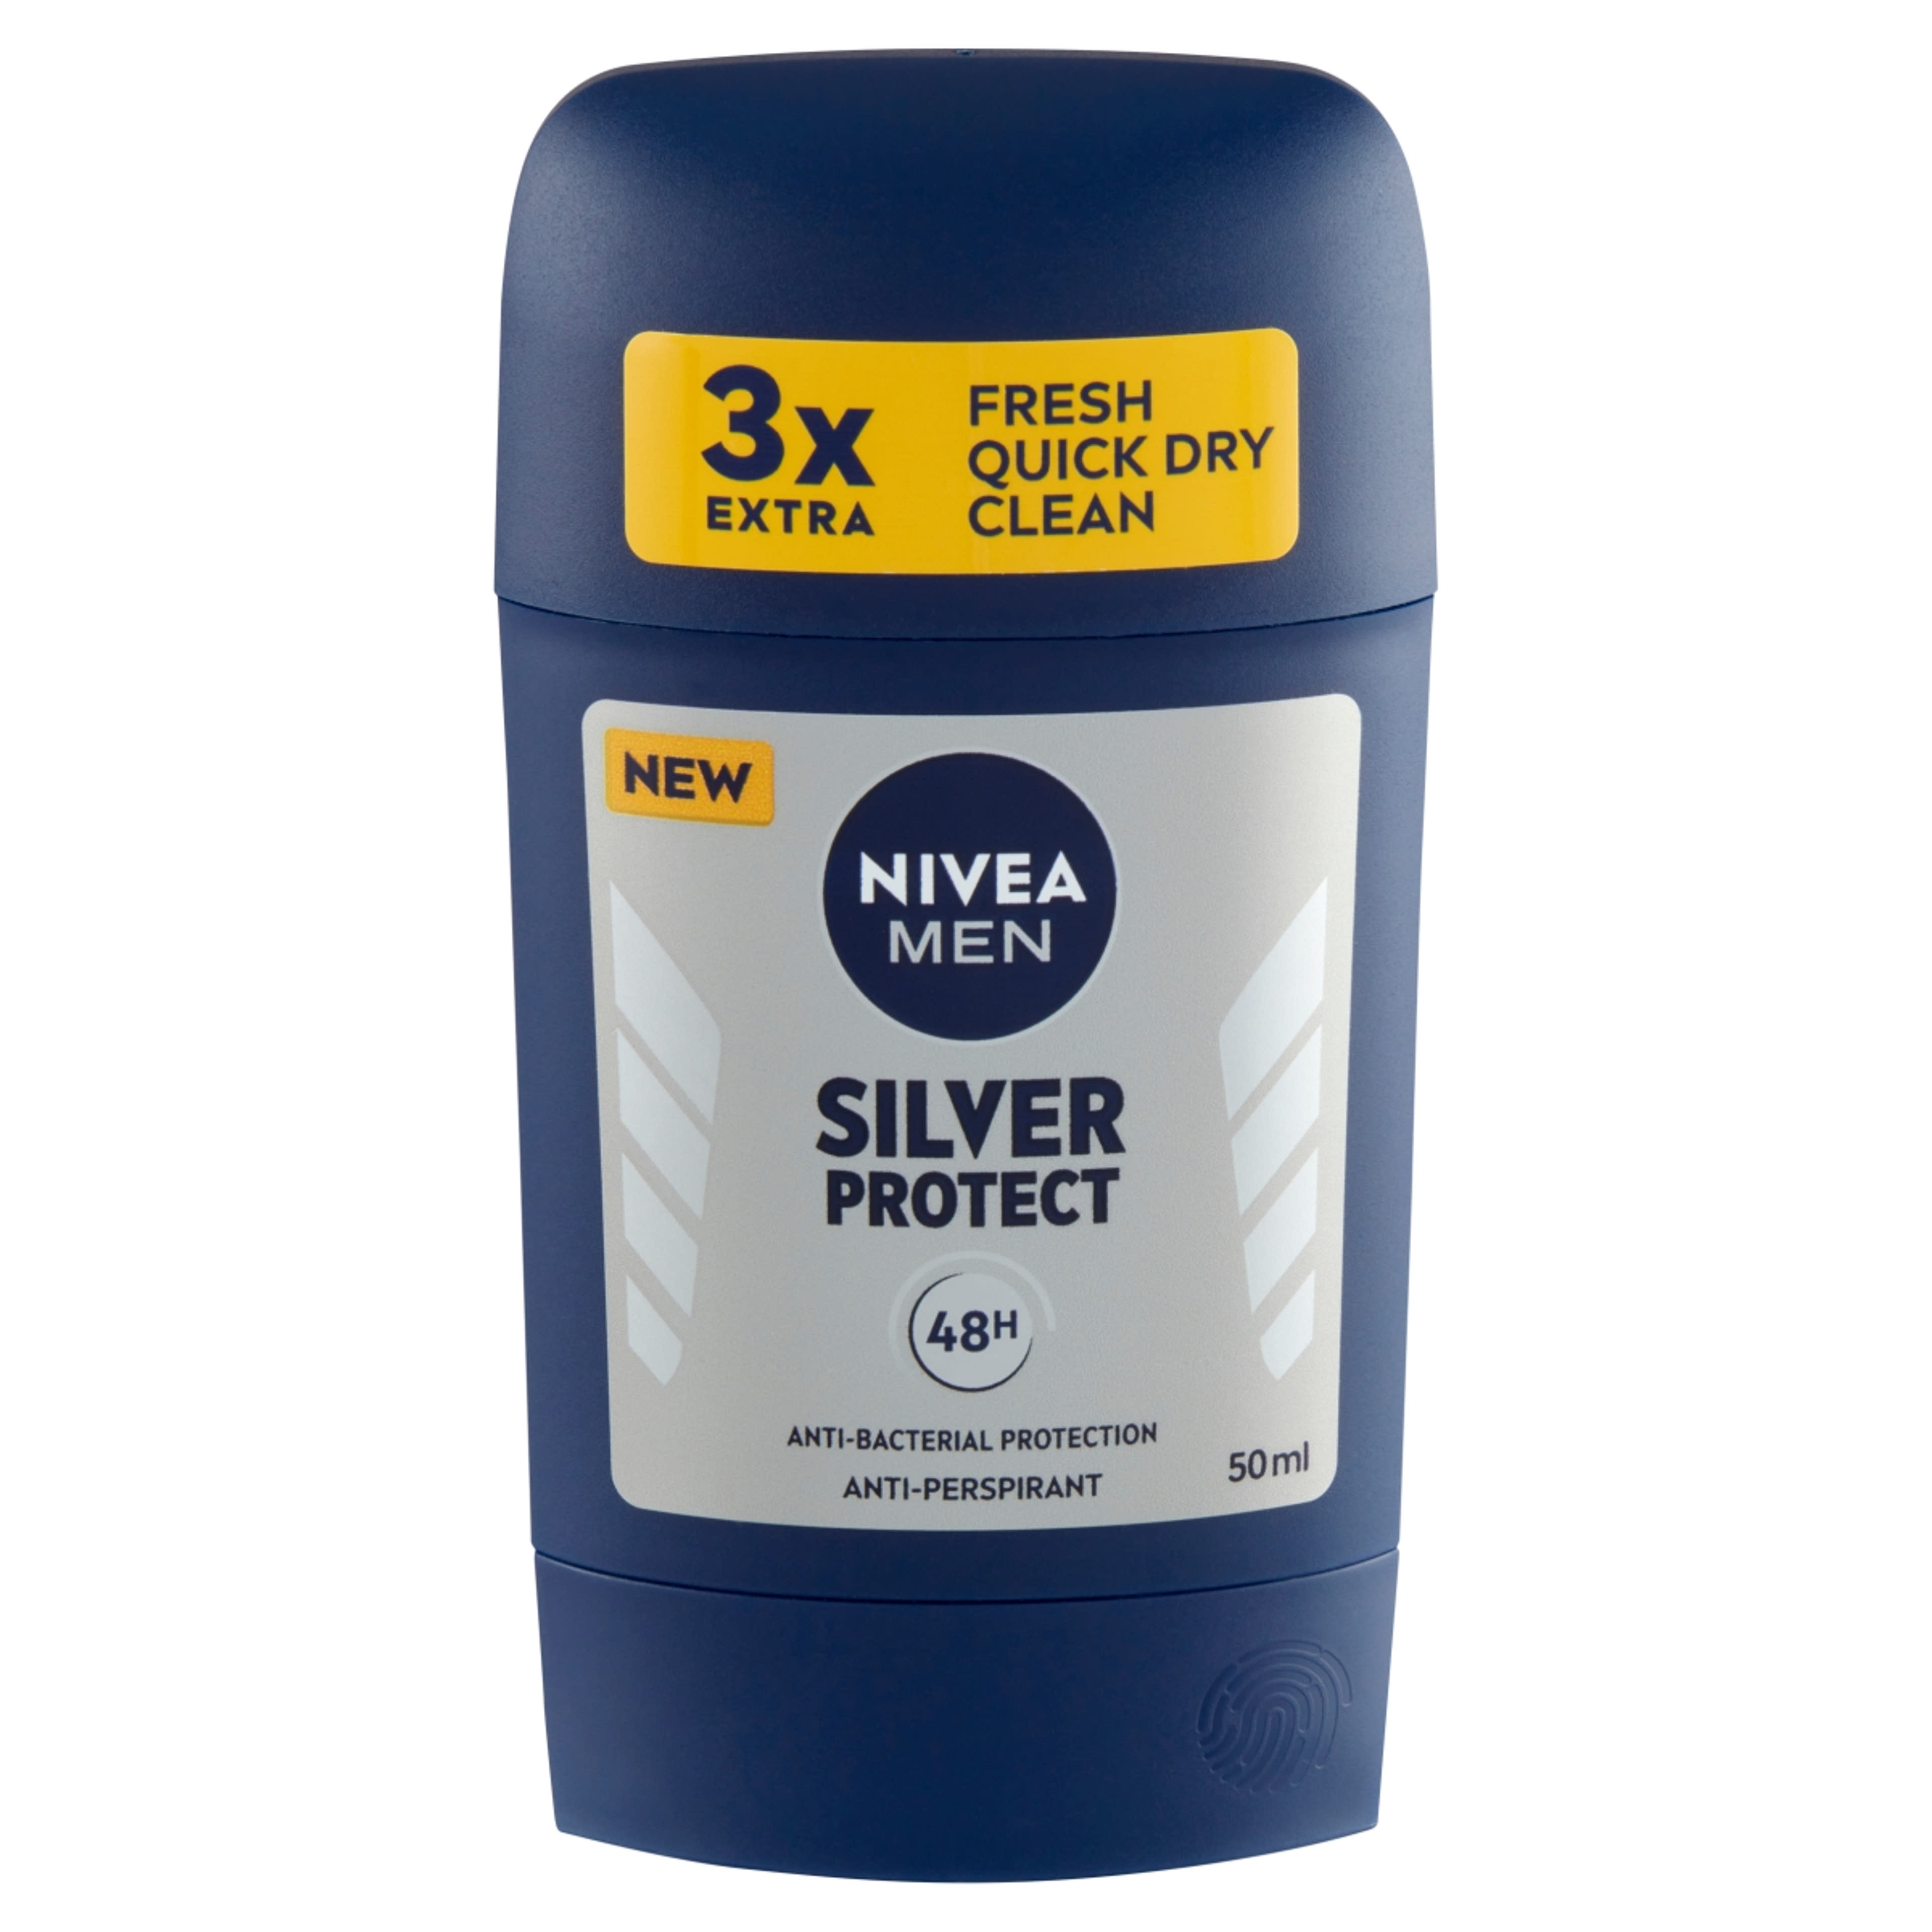 Nivea Men Silver Protect deo stift - 50 ml-2